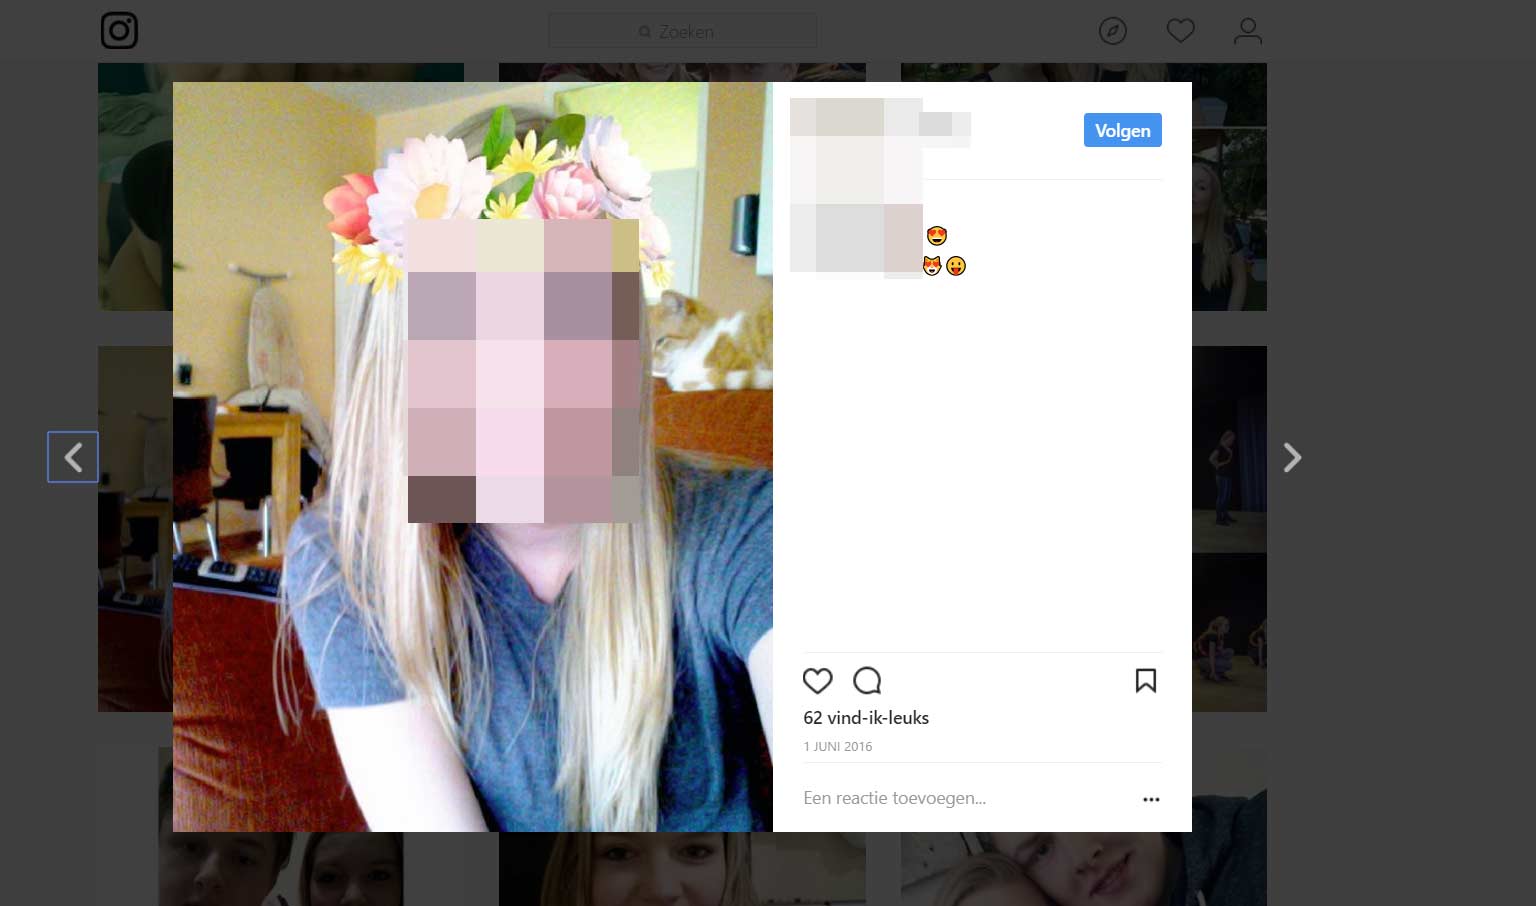 Profielfoto’s meisjes gestolen voor online sekschantage